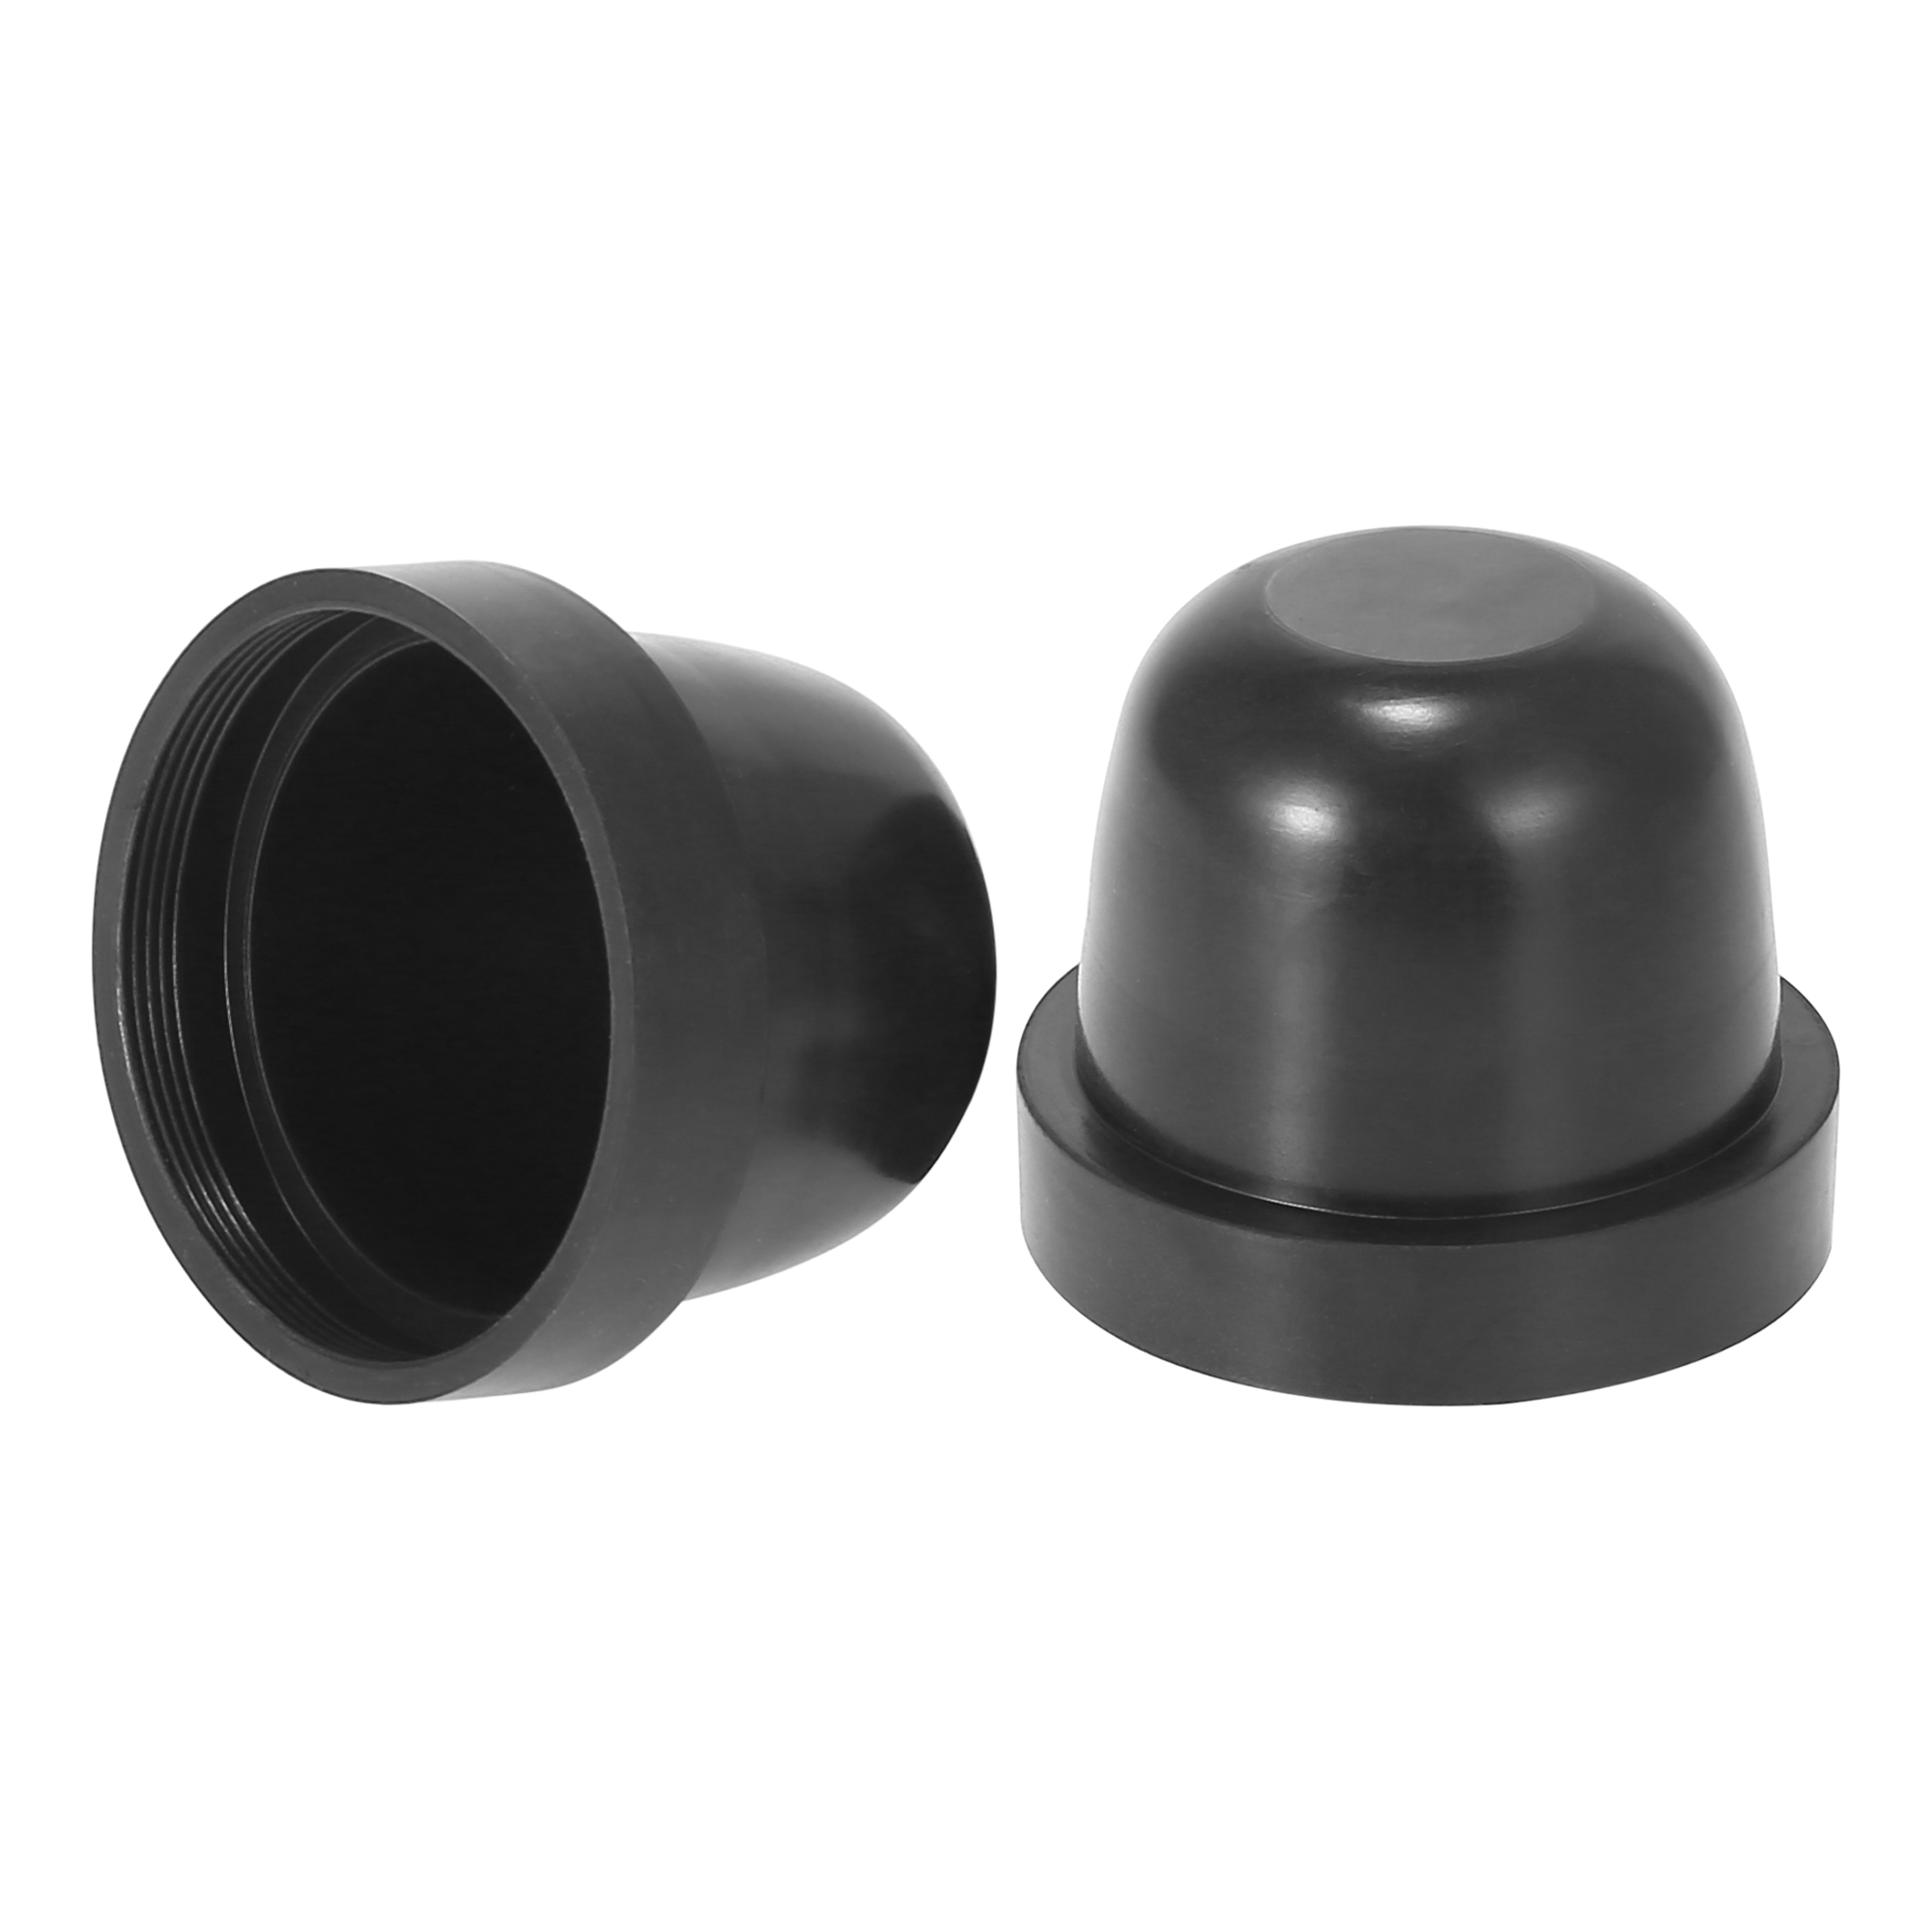 Unique Bargains 2pcs 60mm Car Rubber Housing Seal Caps Headlight Dust Cover Waterproof Caps